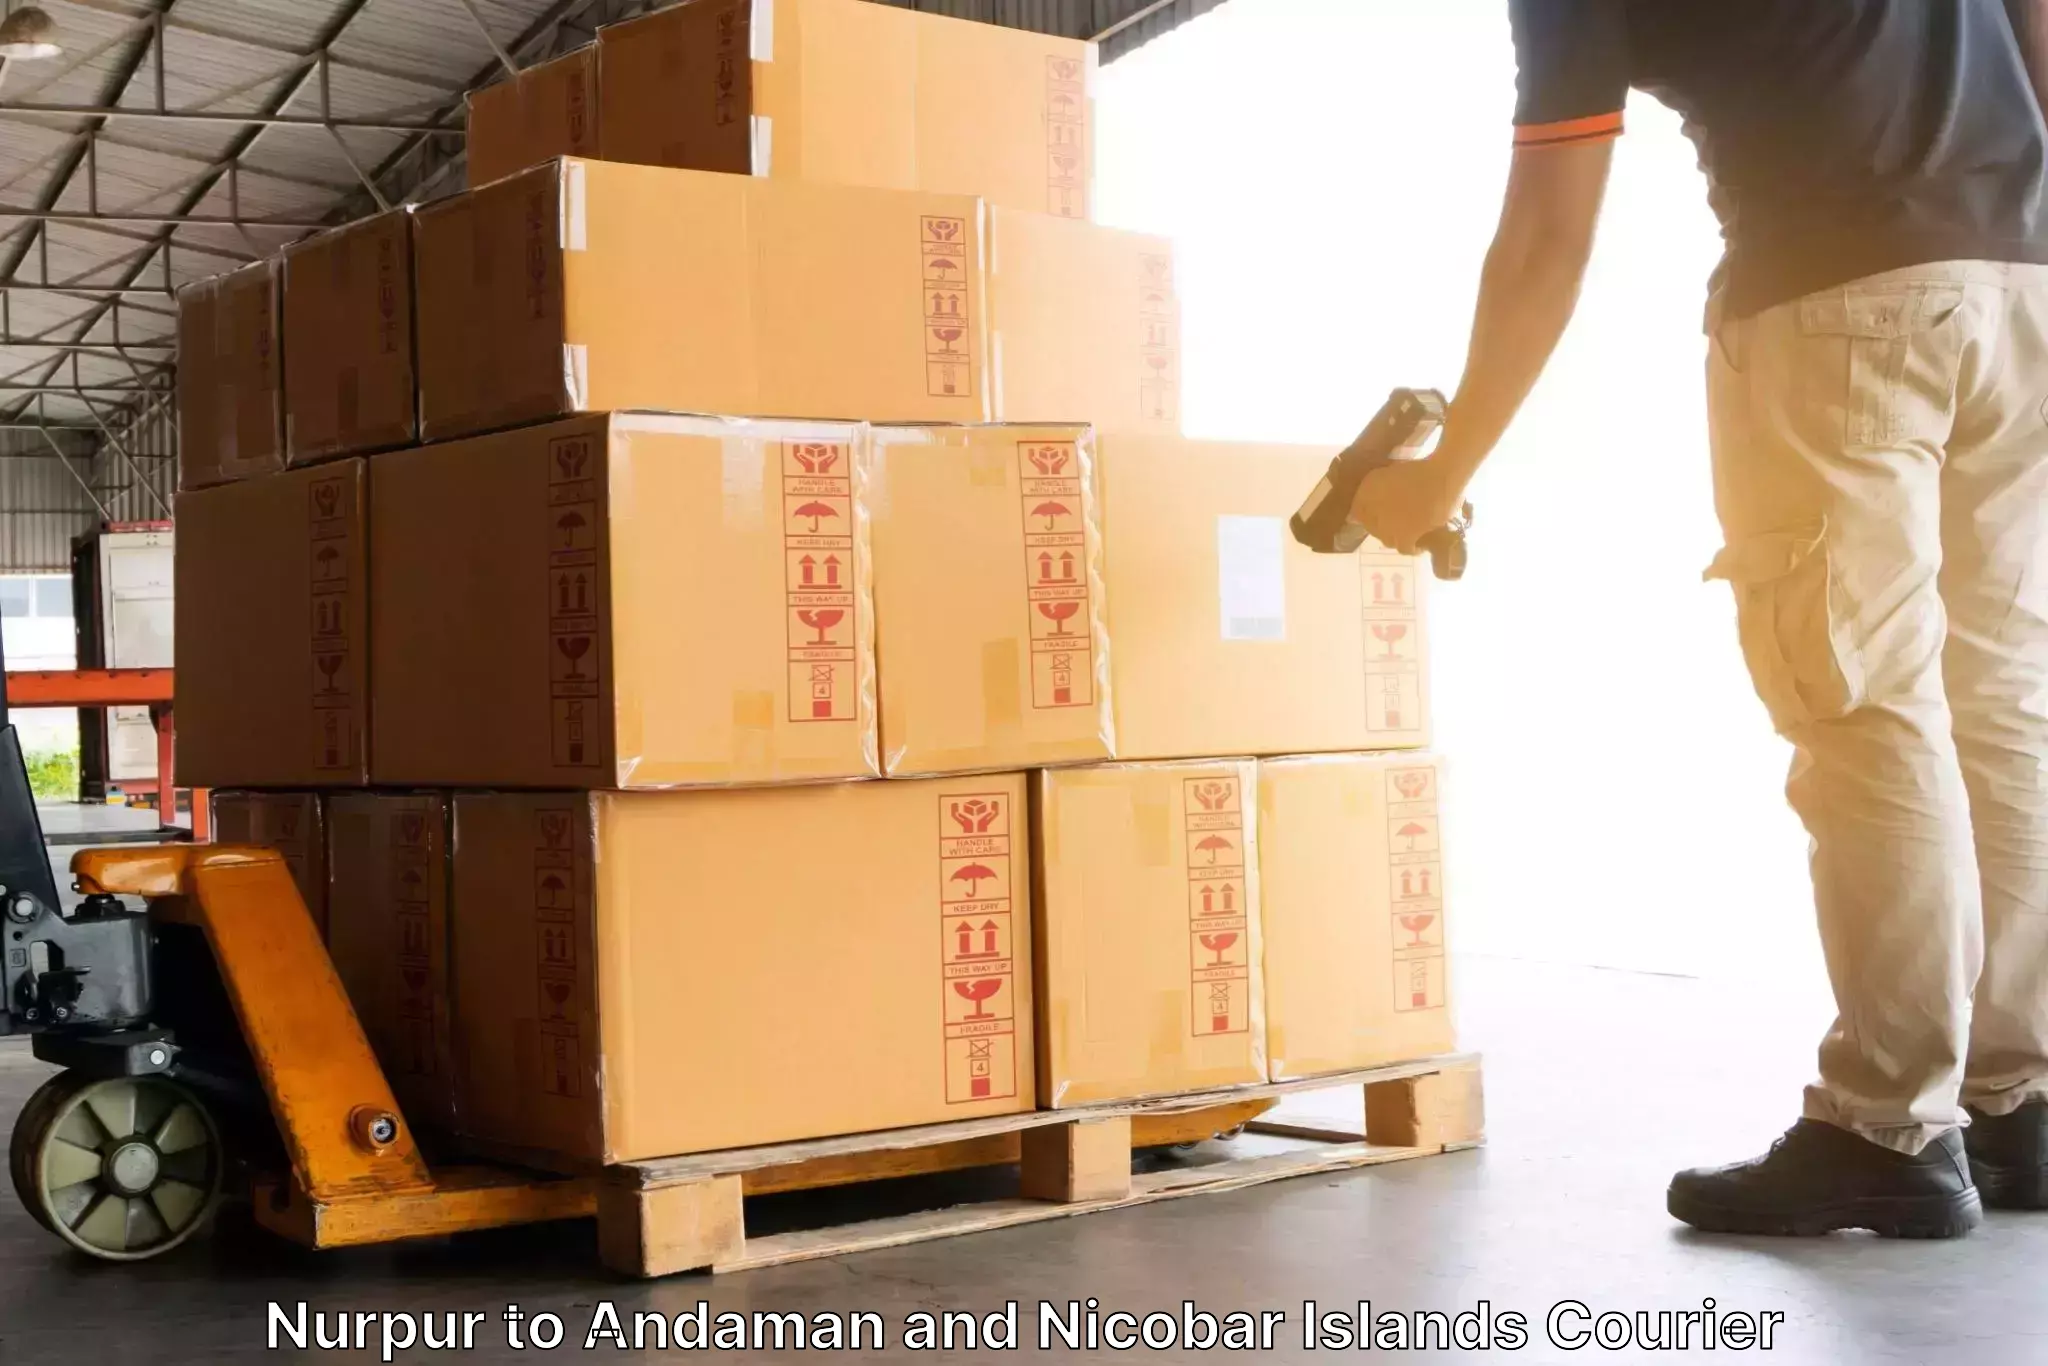 Versatile courier options Nurpur to Nicobar